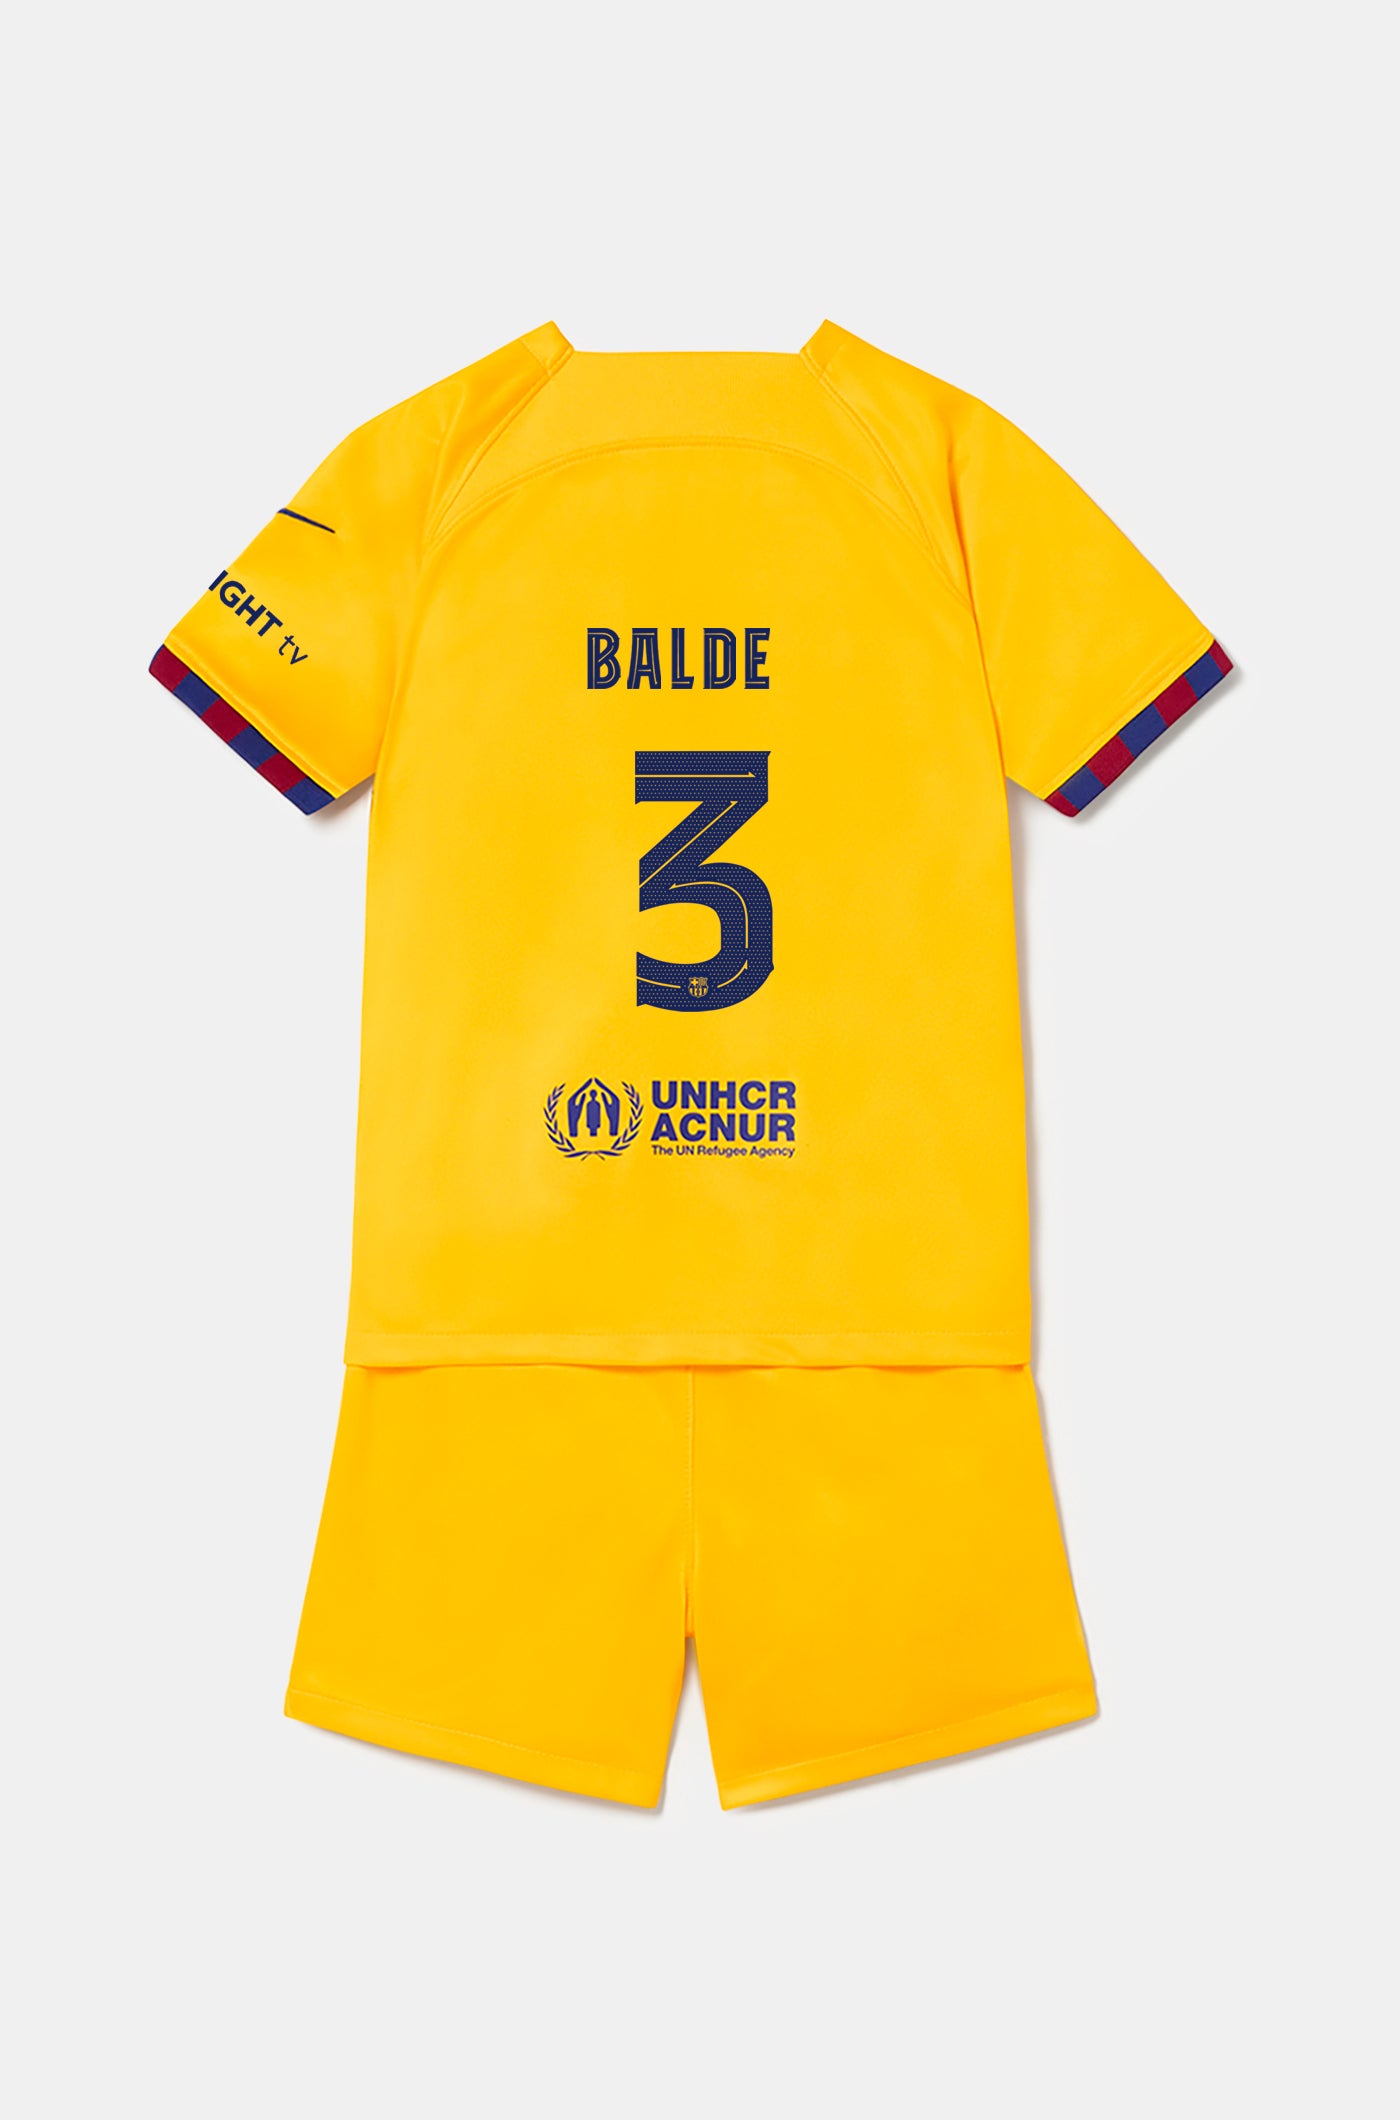 FC Barcelona fourth kit 22/23 - Little Kids - BALDE